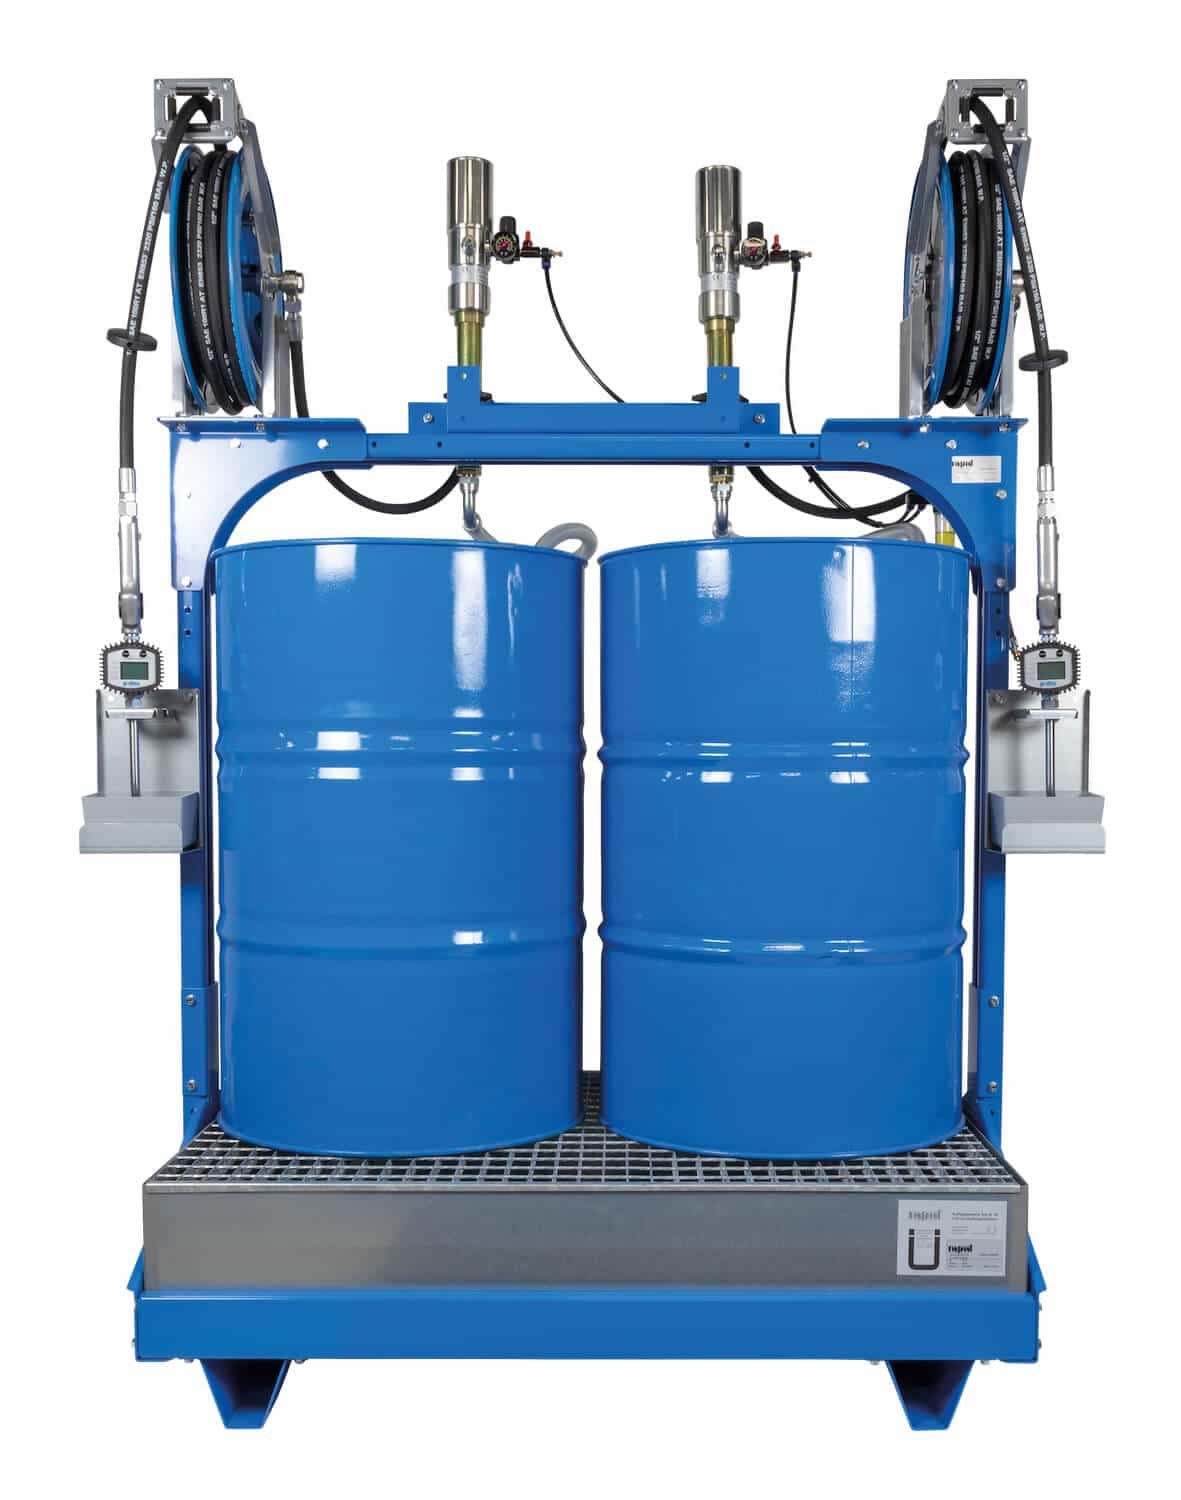 Universell einsetzbares Ölabgabeset für 2x 200 Ltr.-Fässer, mit pneumatischen Pumpen und automatischen Schlauchaufrollern